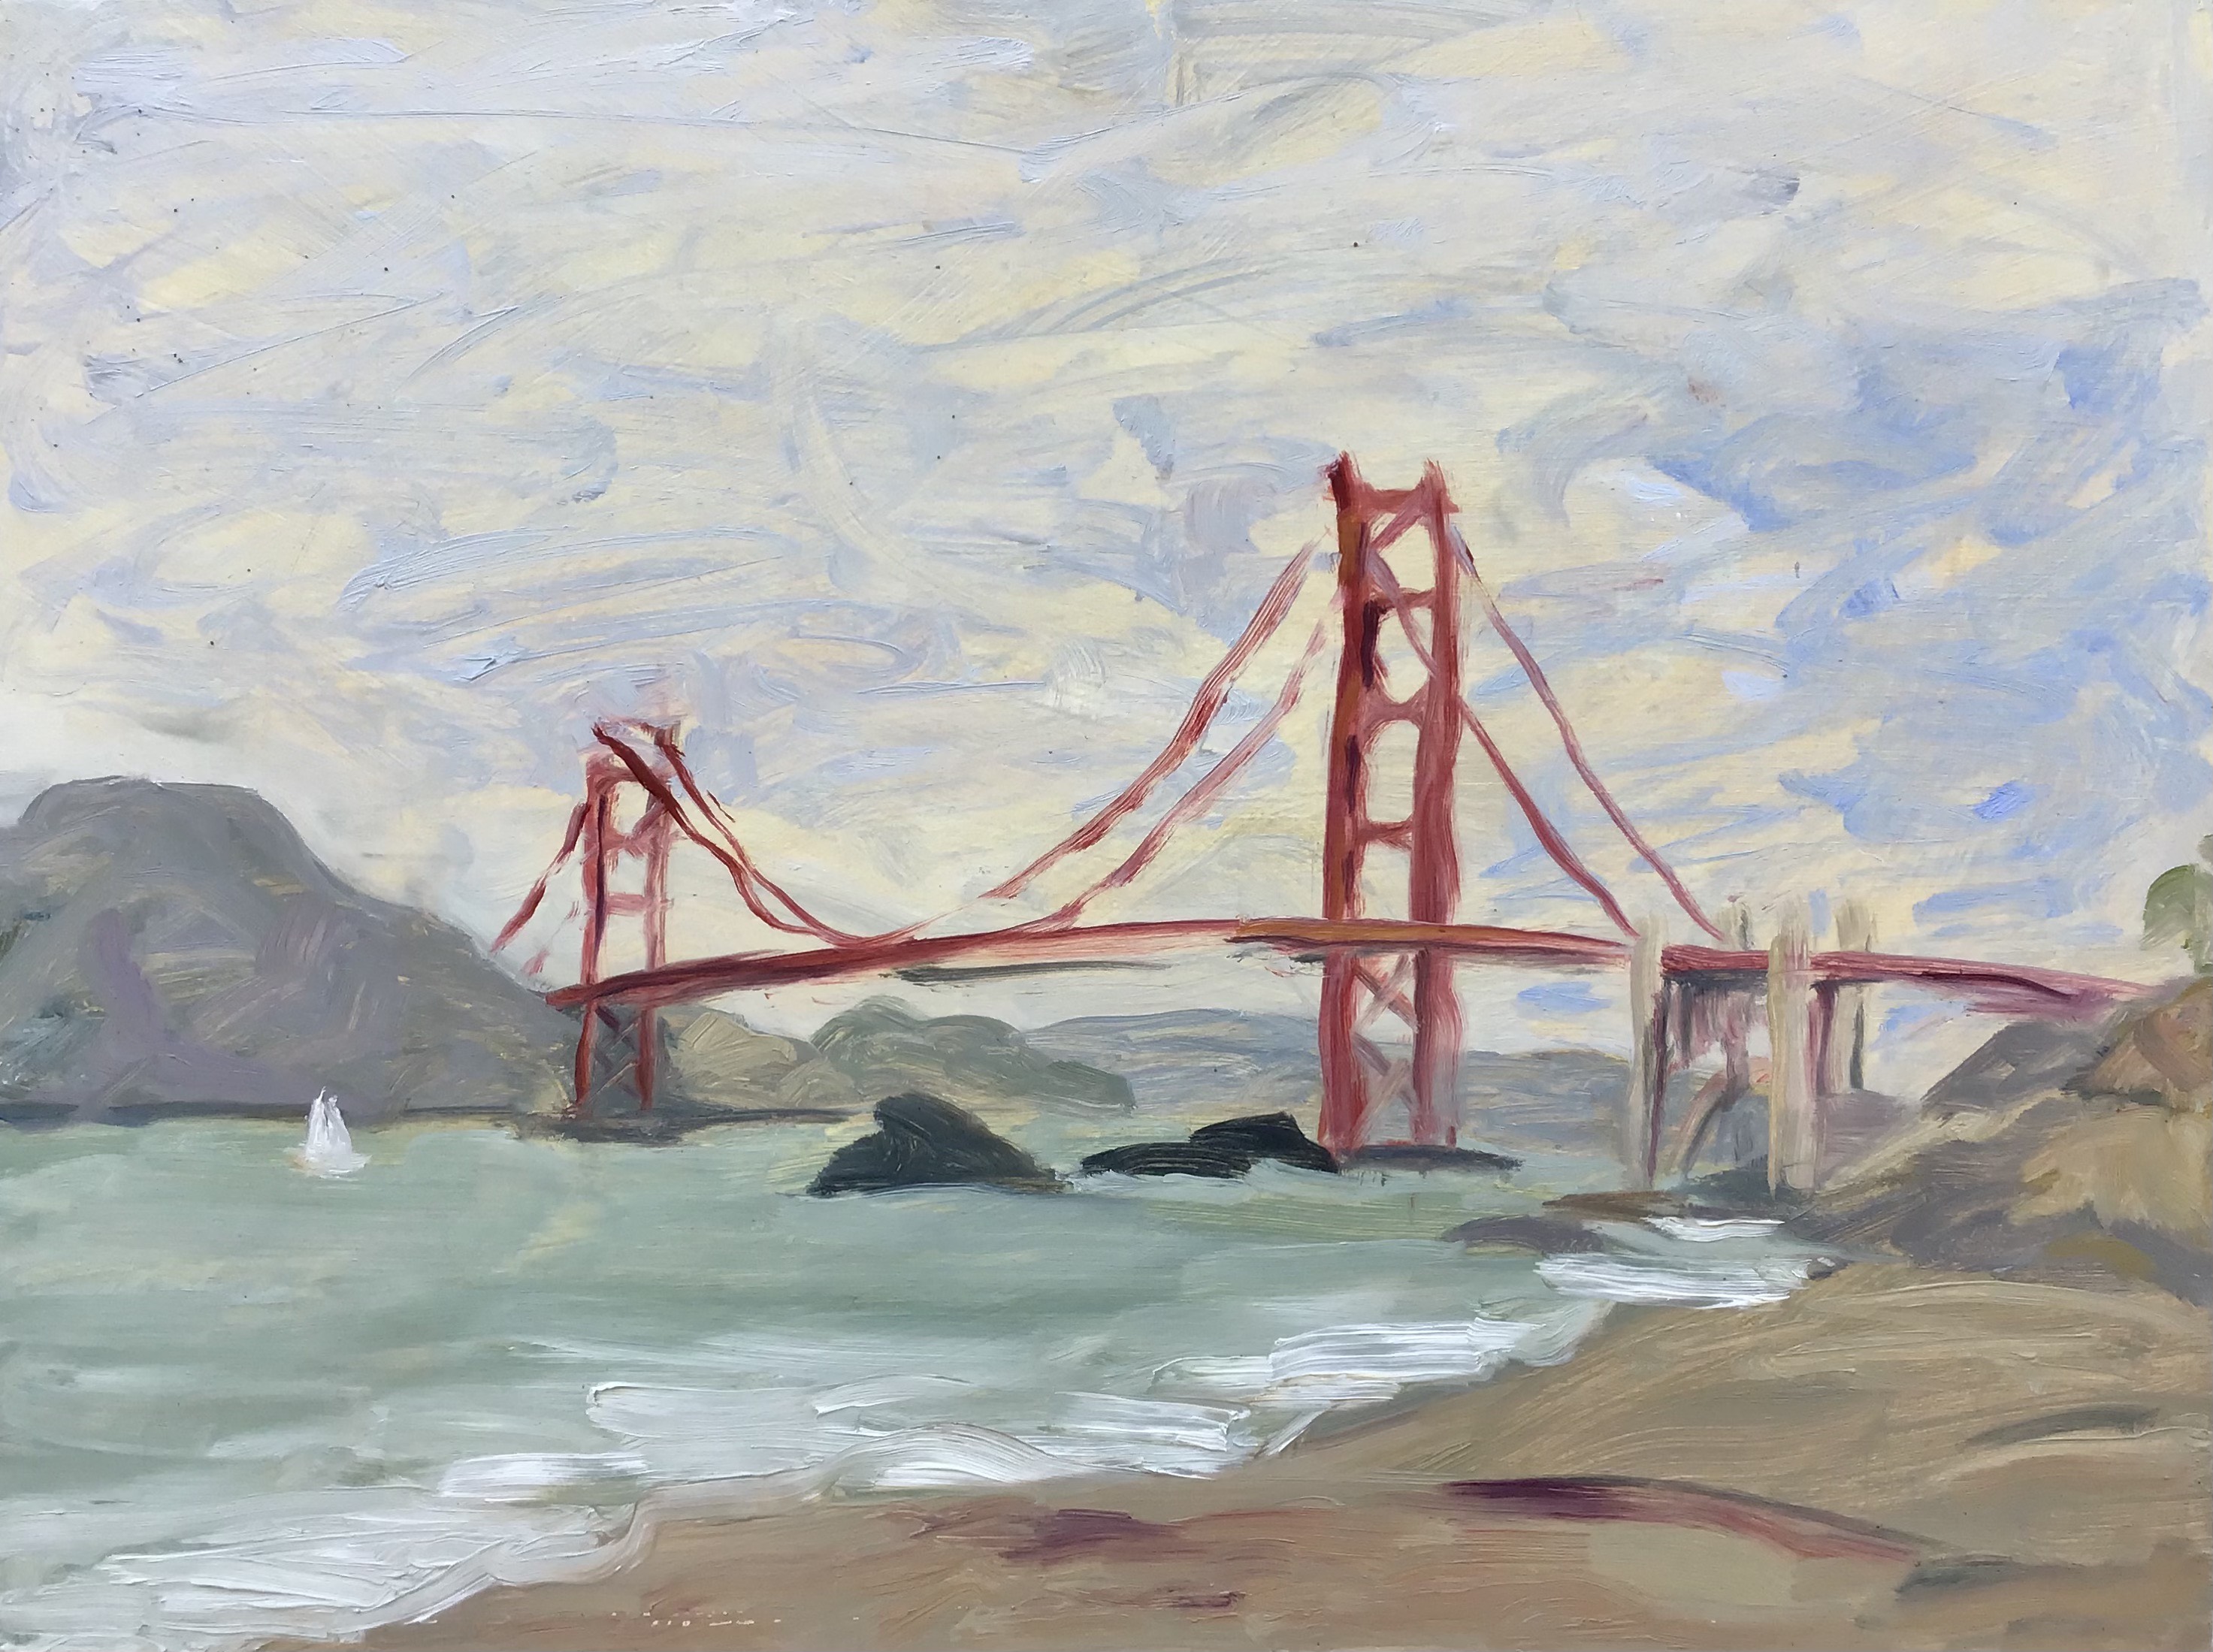 Golden Gate from Baker Beach